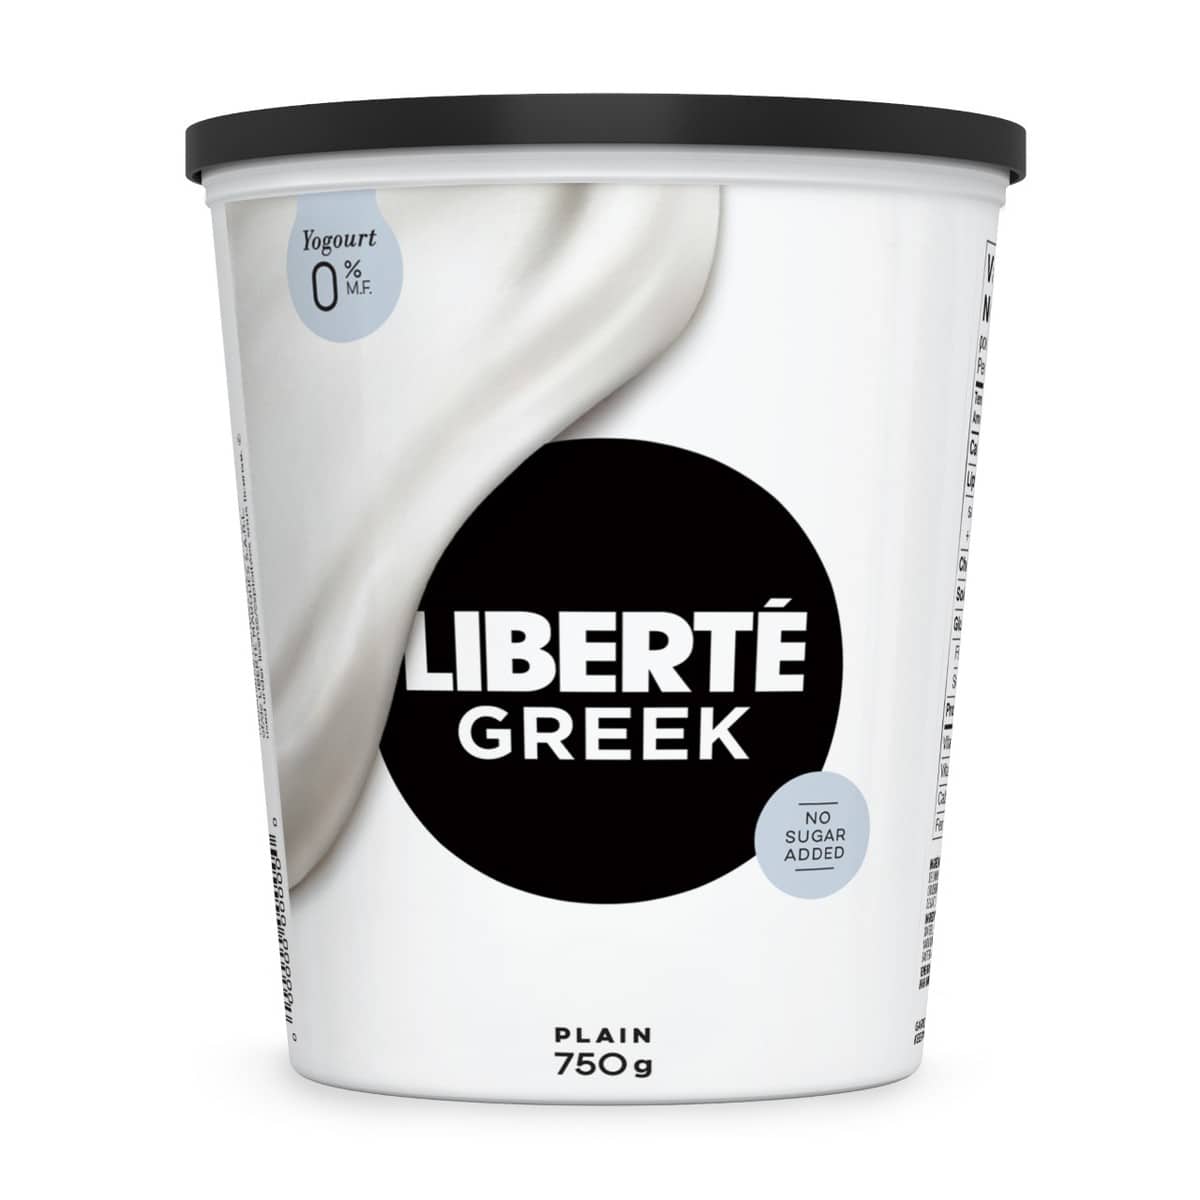 A container of Liberté Greek yogurt. 